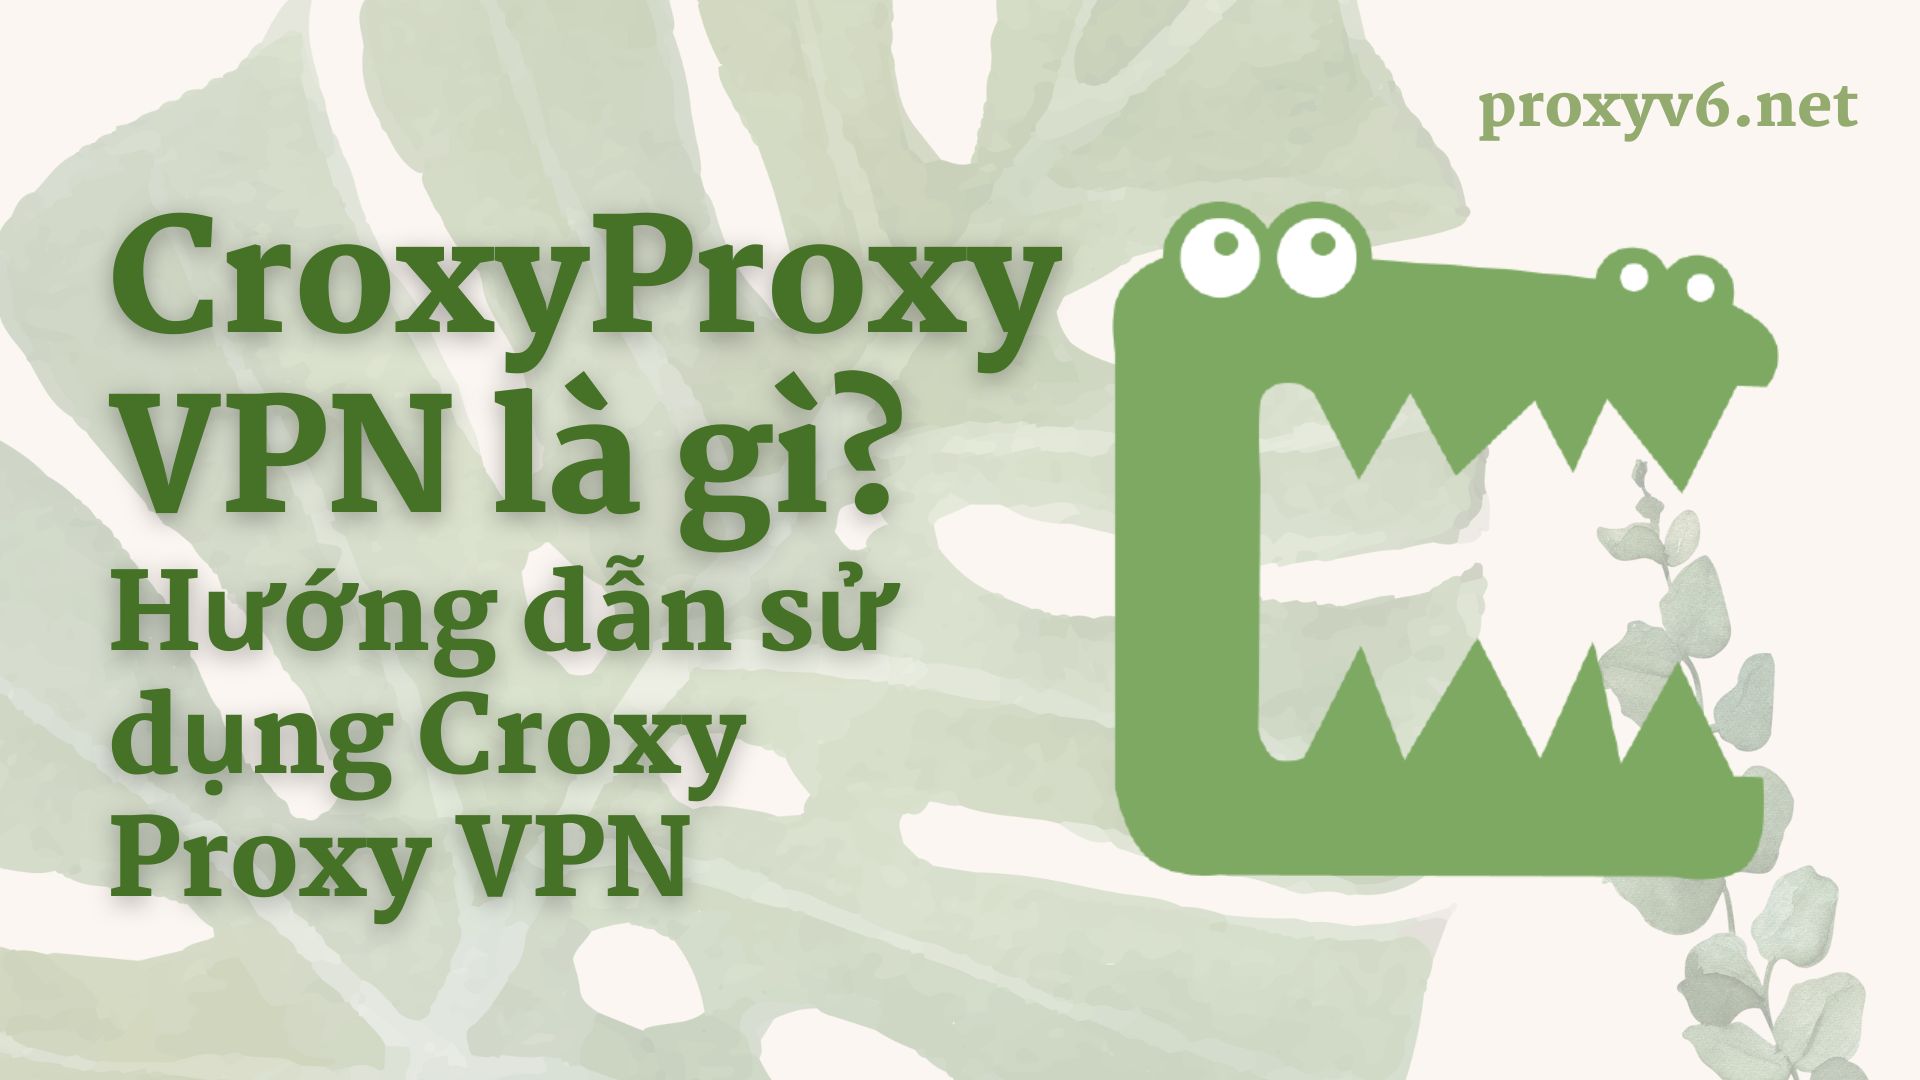 CroxyProxy VPN là gì? Hướng dẫn sử dụng Croxy Proxy VPN